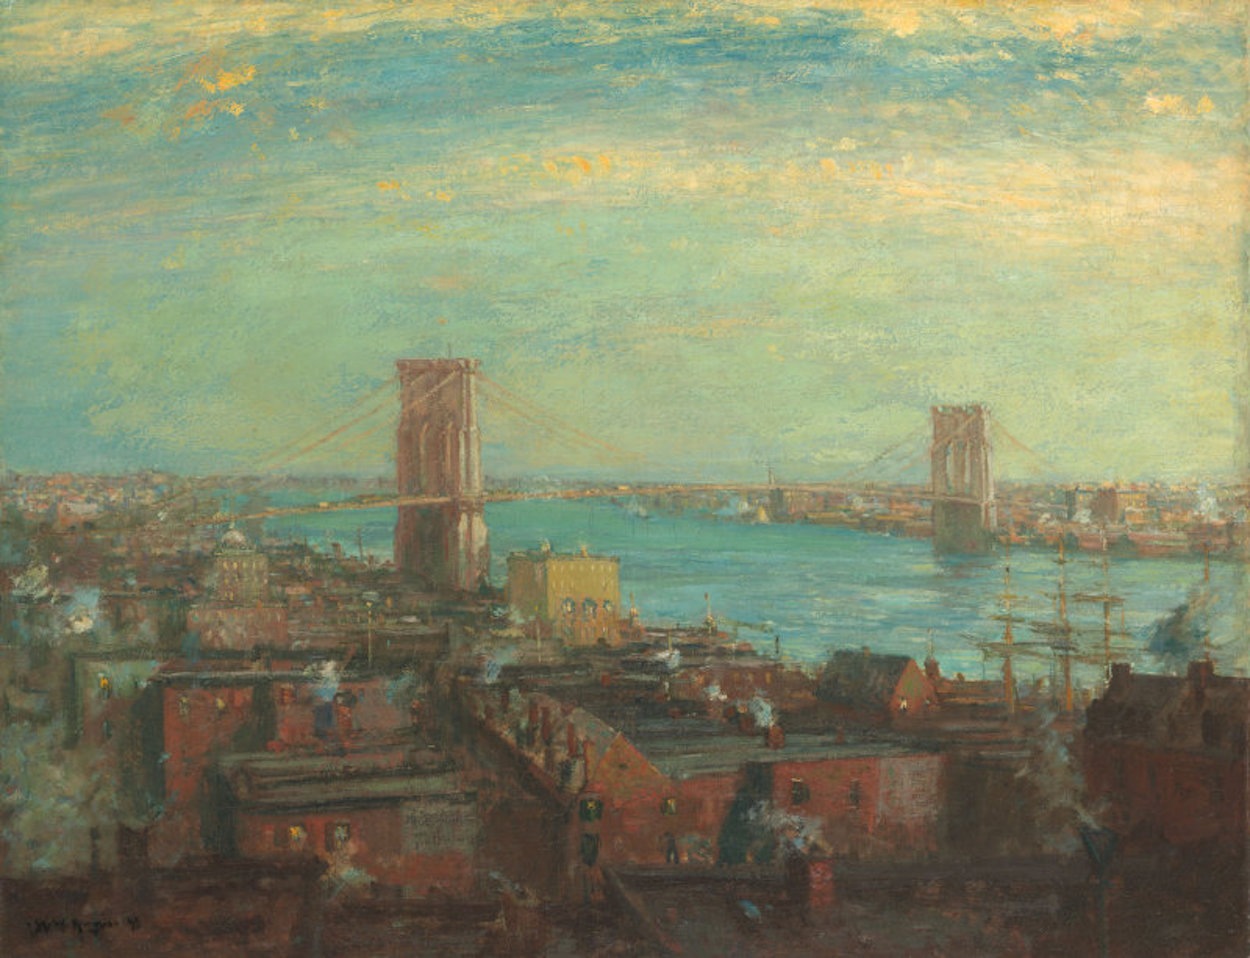 布鲁克林大桥 by 亨利 兰格 - 1899 芝加哥藝術博物館